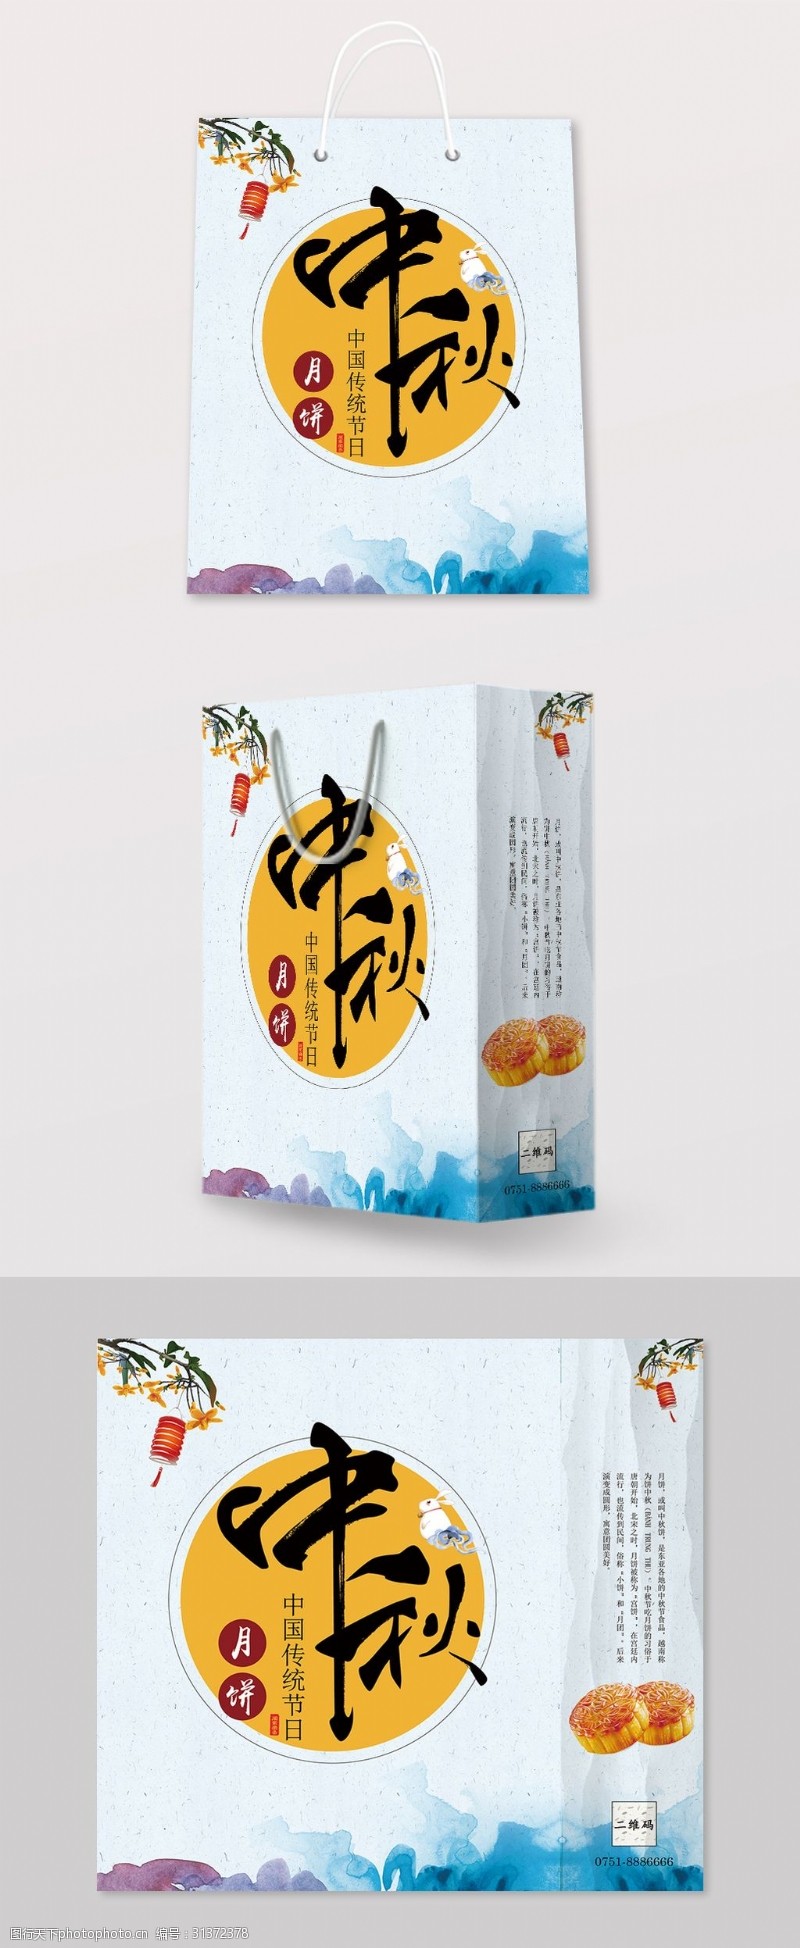 送礼中国风中秋节月饼礼盒手提袋包装设计模板